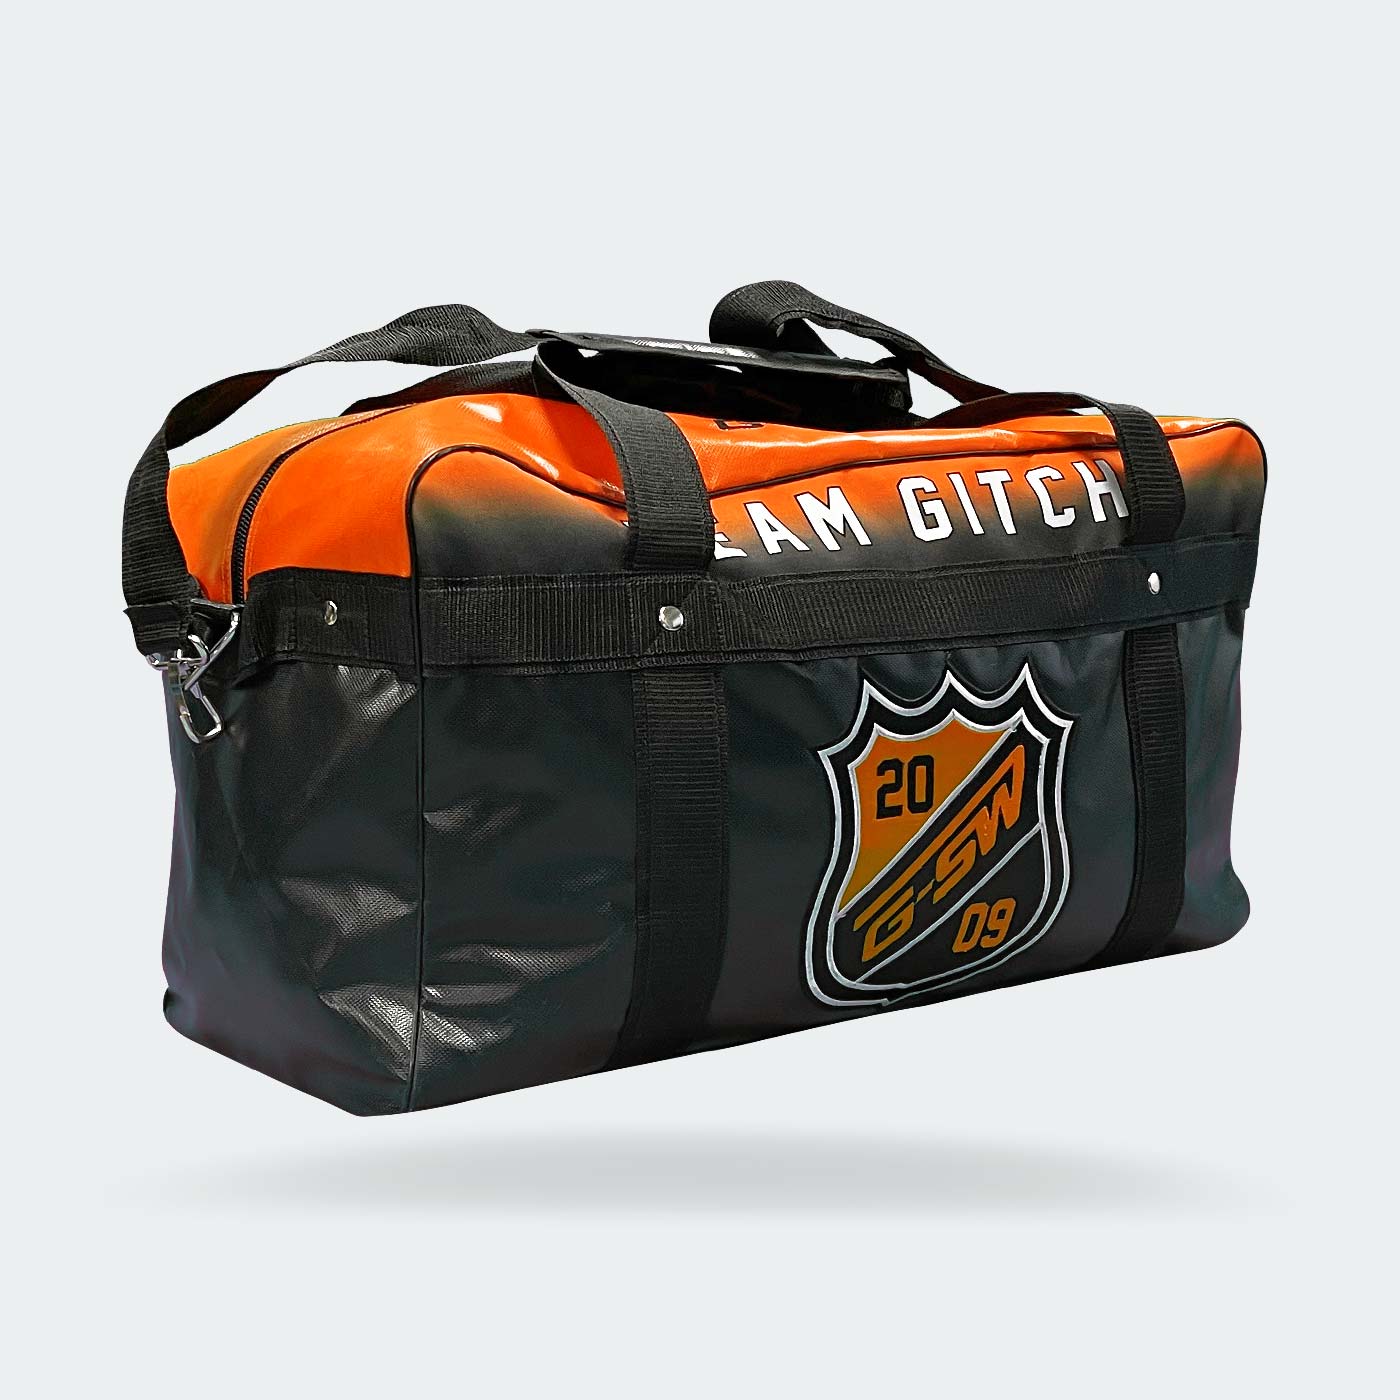 Team Gitch Coaches Bag